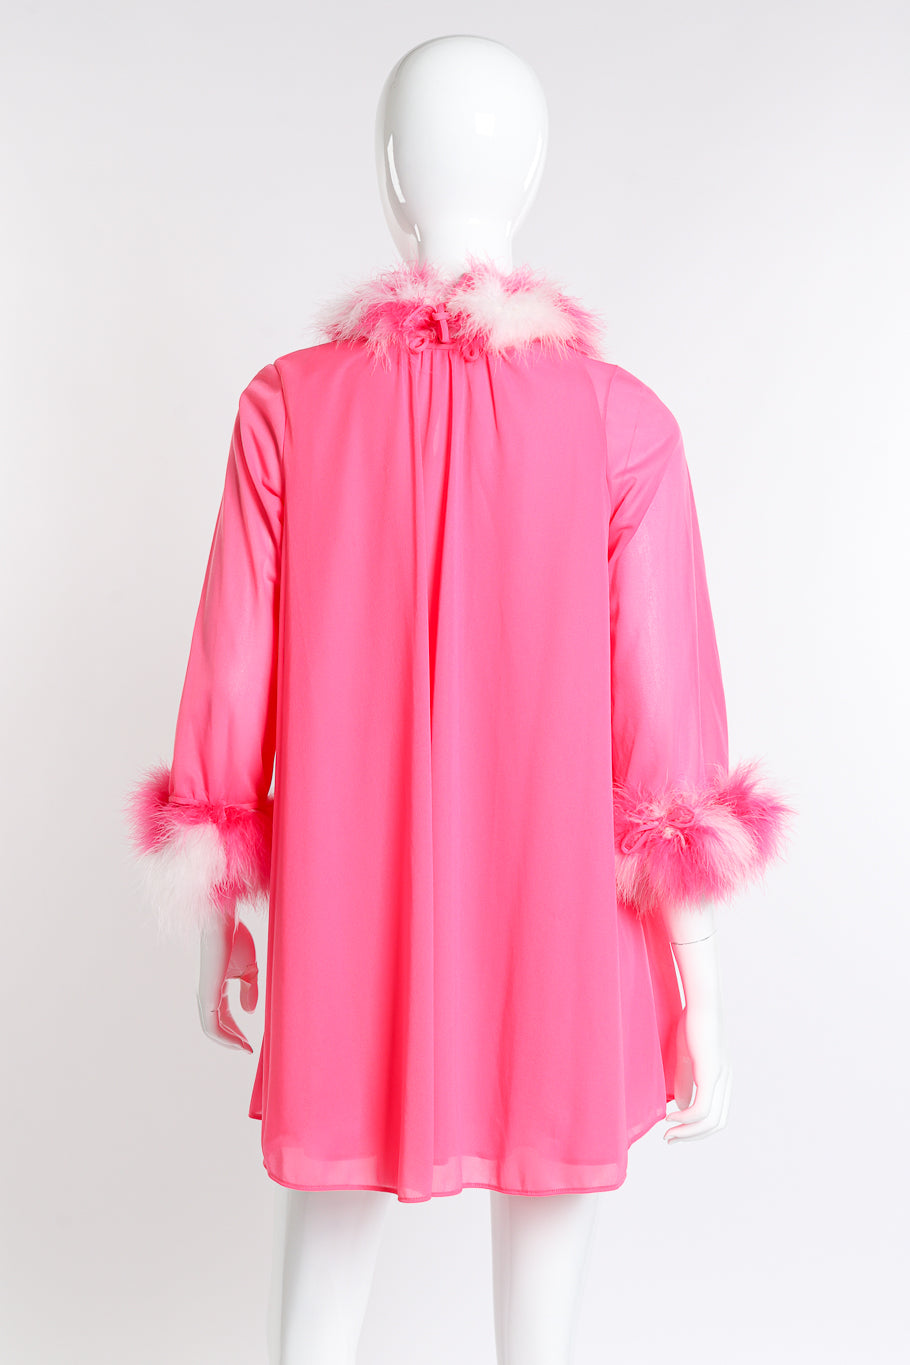 Vintage Flair Marabou Trim Top & Dress Set back on mannequin closeup @recess la